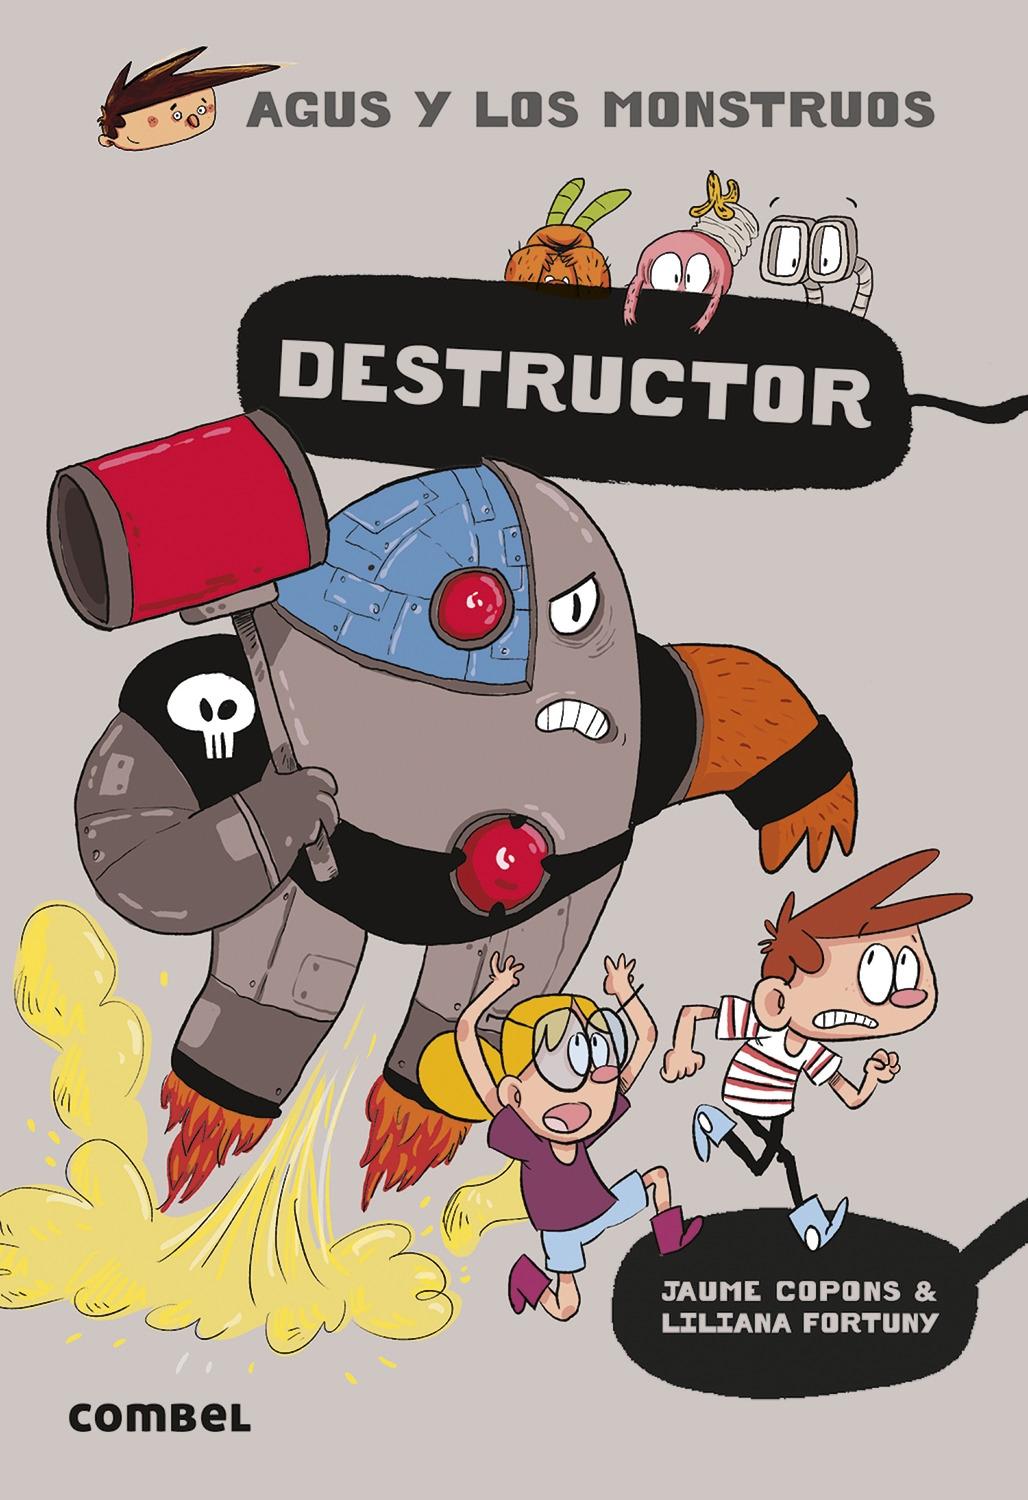 Agus y los monstruos 19 "Destructor"